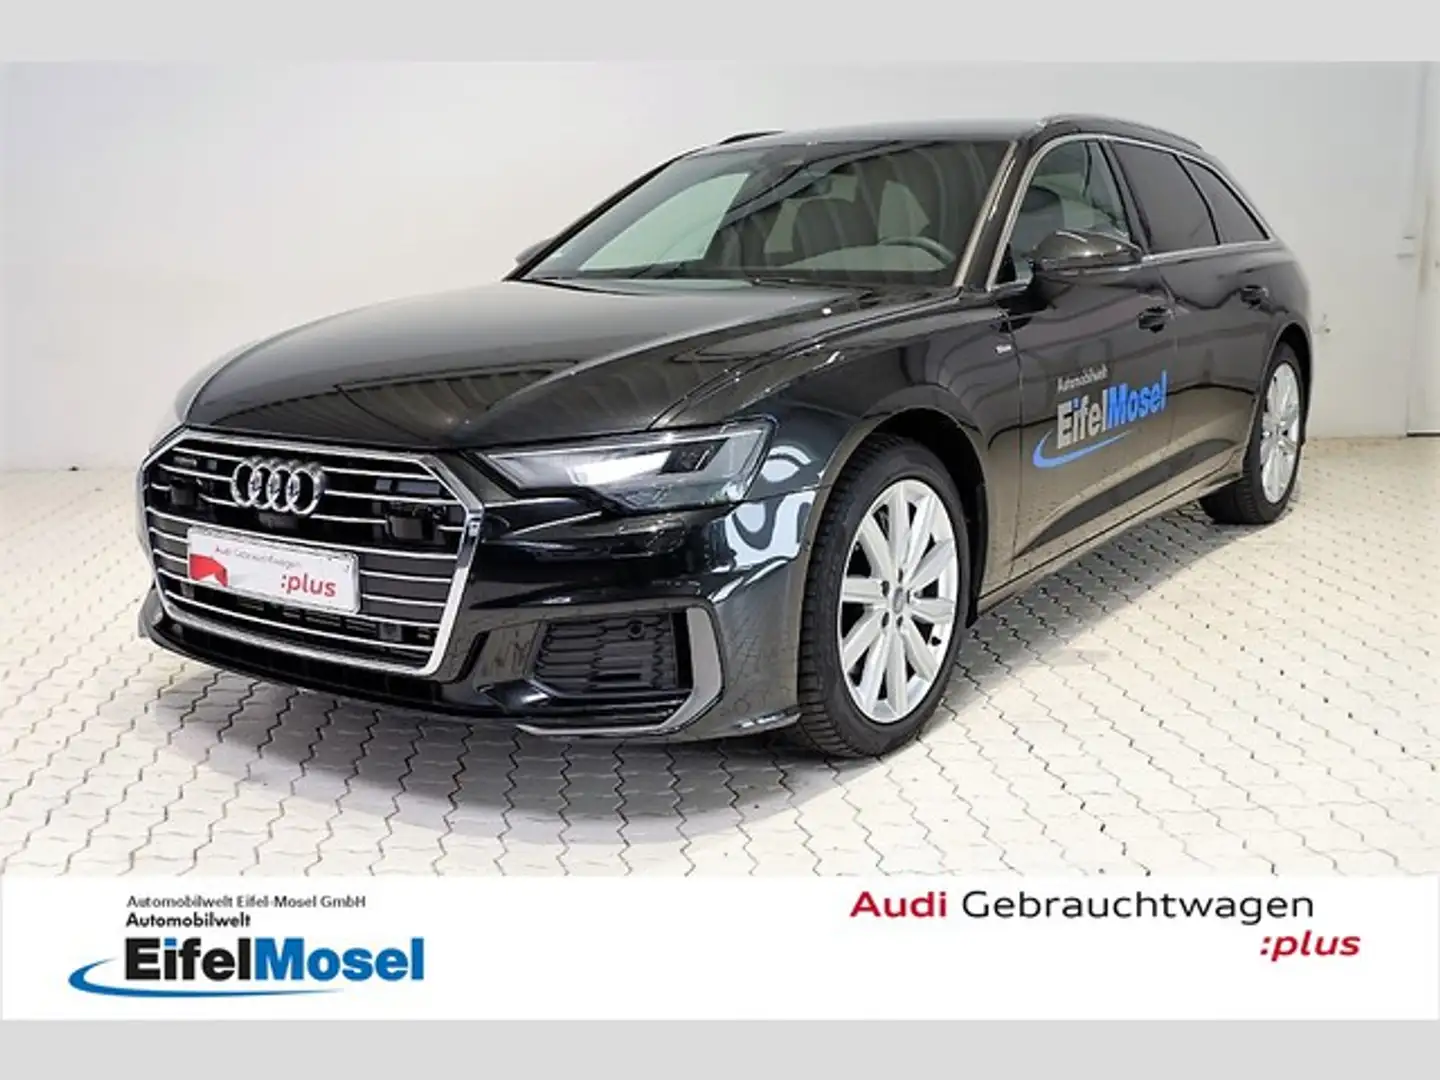 Audi A6 Kombi in Grau gebraucht in Bitburg für € 44.770,-